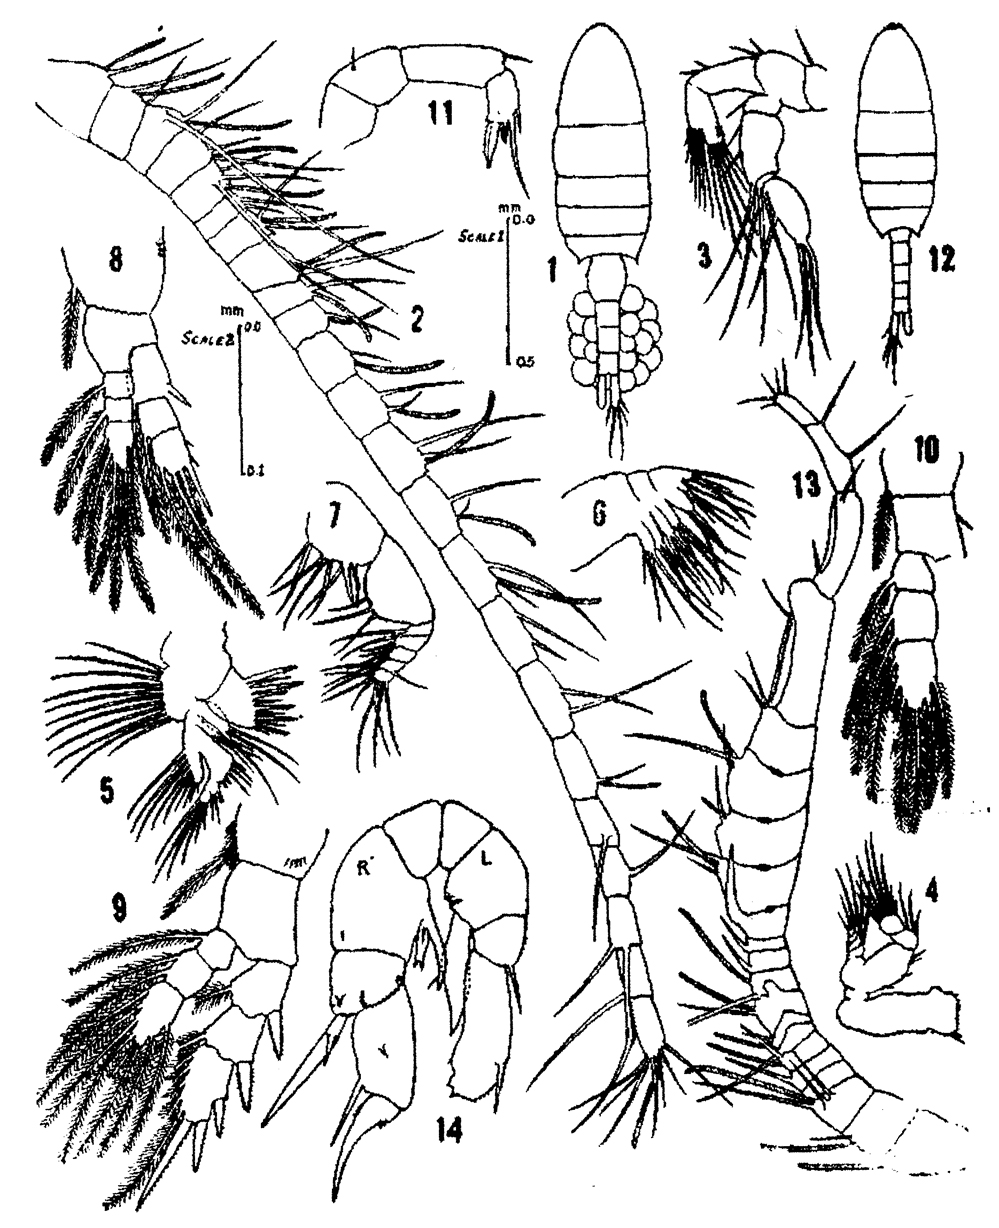 Species Pseudodiaptomus ardjuna - Plate 1 of morphological figures